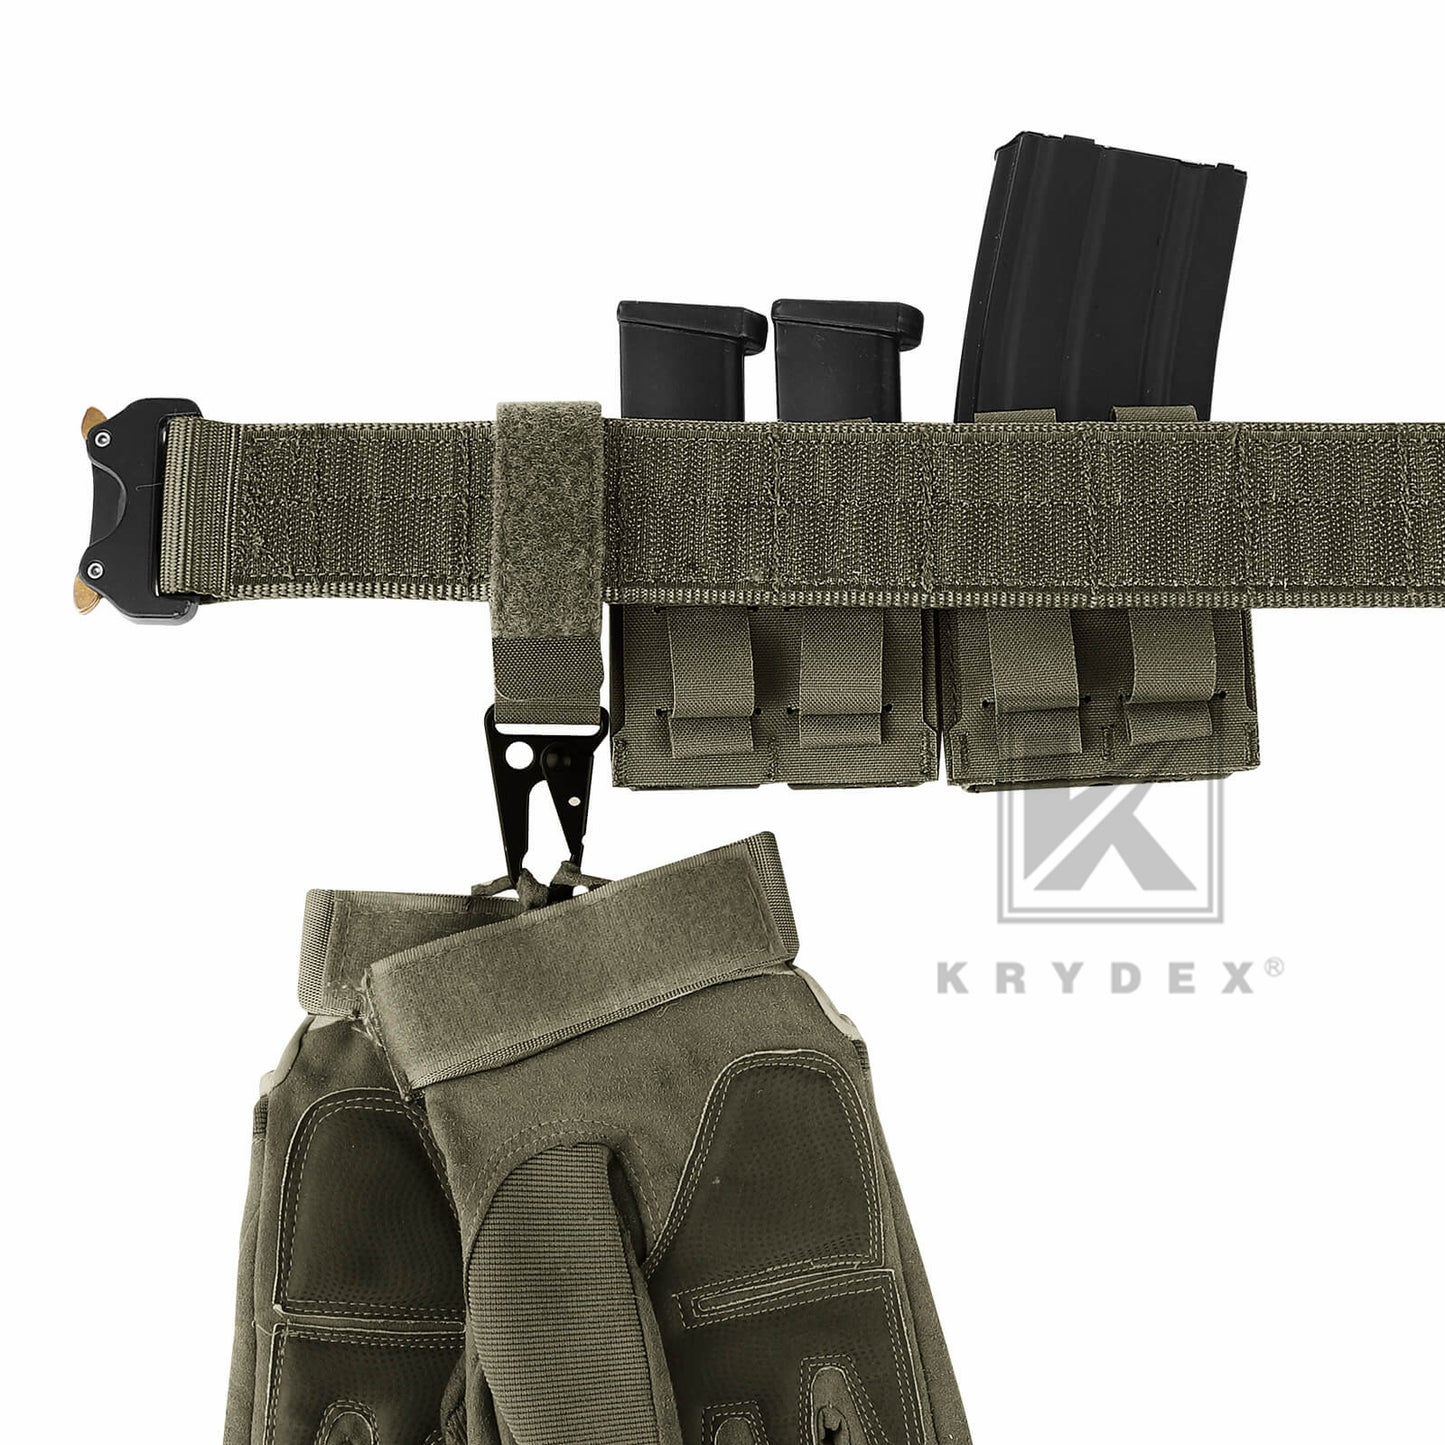 Krydex Tactical Belt Keeper Utility Hook Key Holder Keychain Gloves Carabiner Chemstick Clip MOLLE / Hook & Loop Battle Belt & Plate Carrier